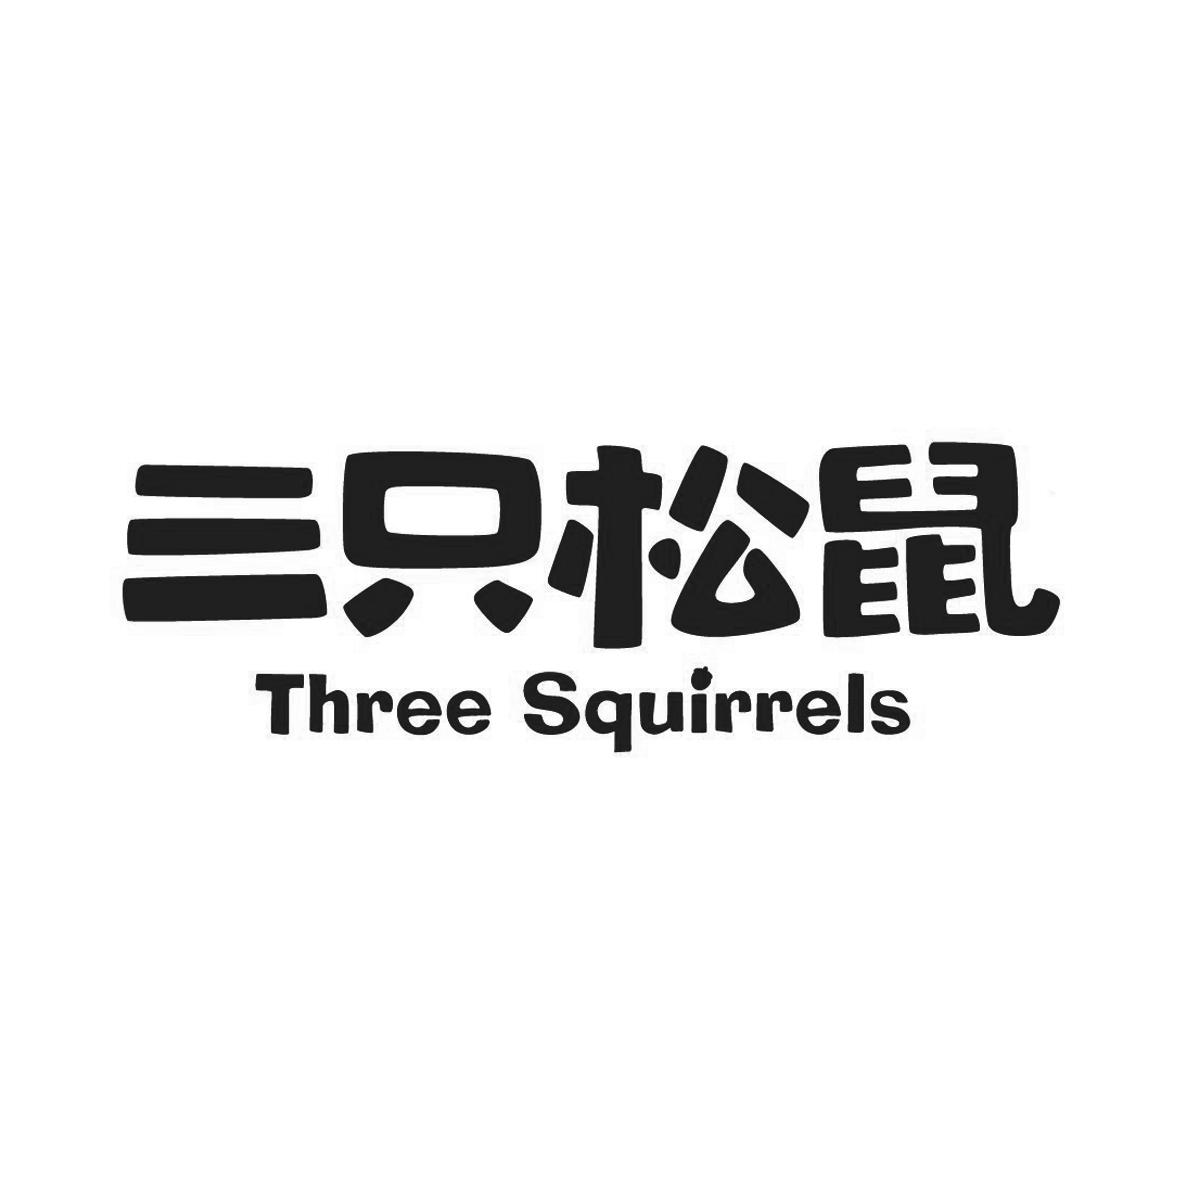 三只松鼠标志图片